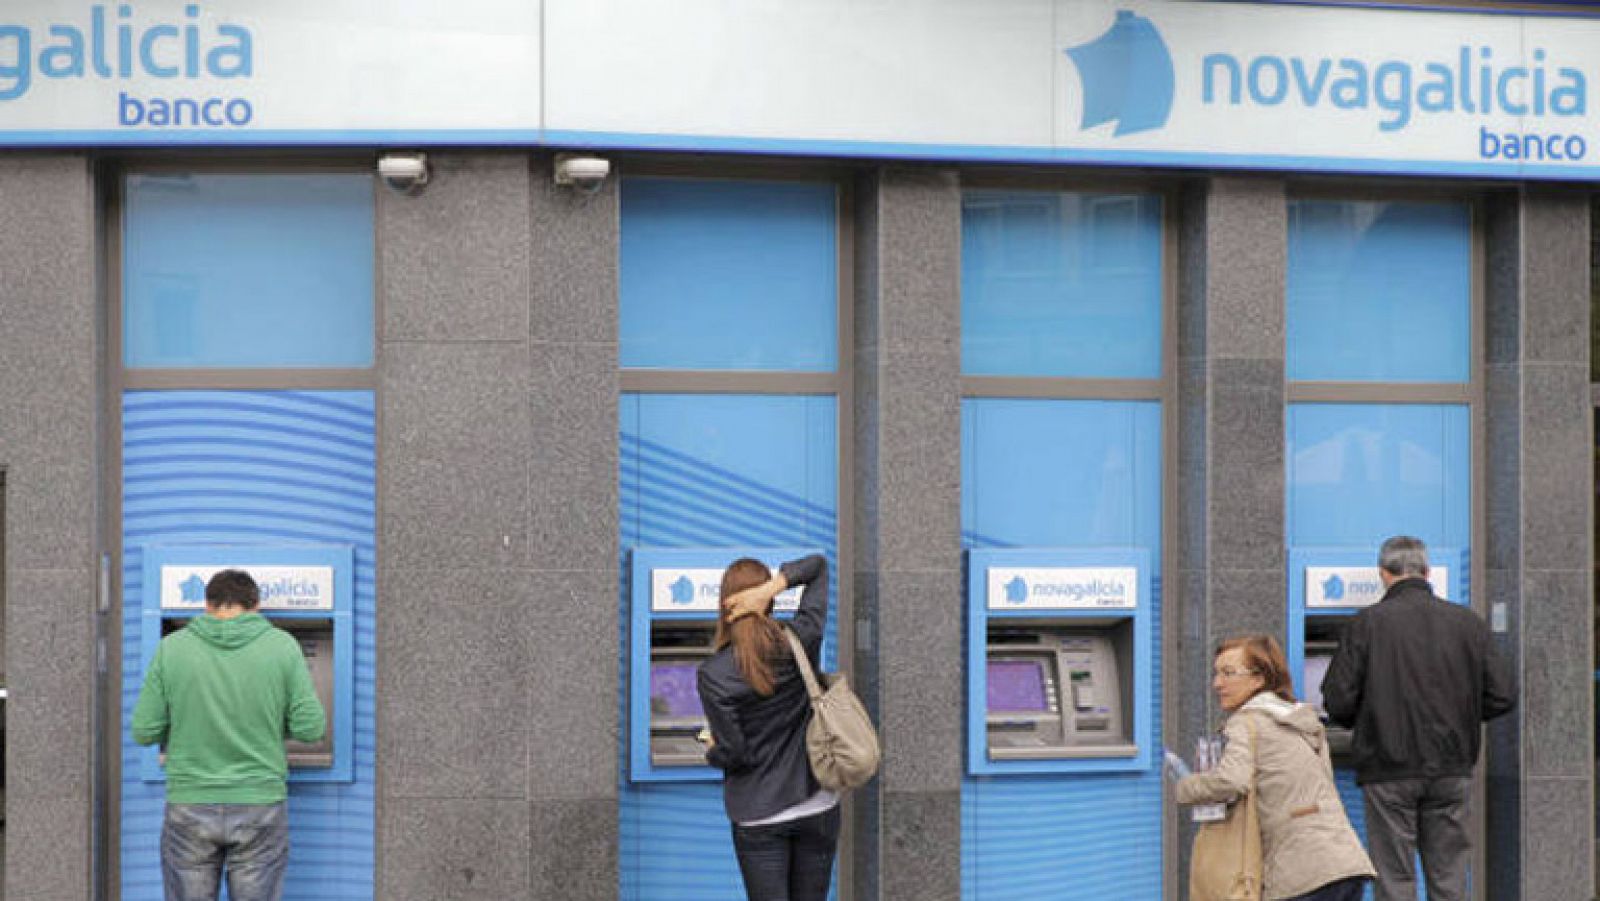 El FROB recibe "seis ofertas vinculantes" para comprar Novagalicia Banco